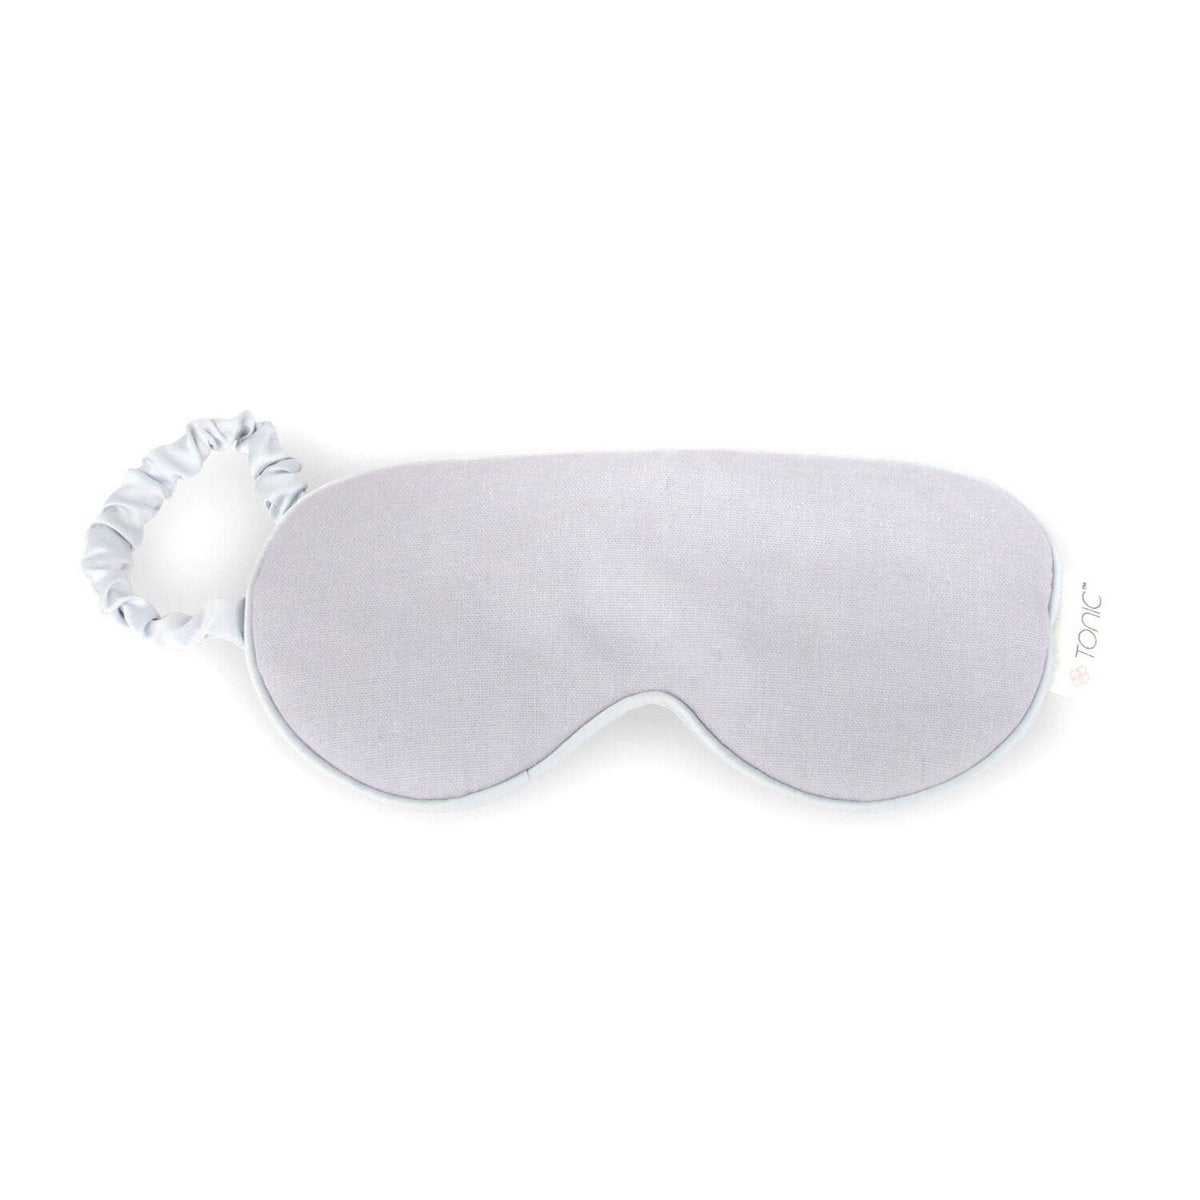 Luxe linnen oogmasker van Tonic Australia, met de hand gemaakt van 100% luxe, koel en zacht linnen en een comfortabele elastische satijnen band om het masker op zijn plaats te houden. Het oogmasker helpt je om sneller in slaap te vallen en langer in slaap te blijven.